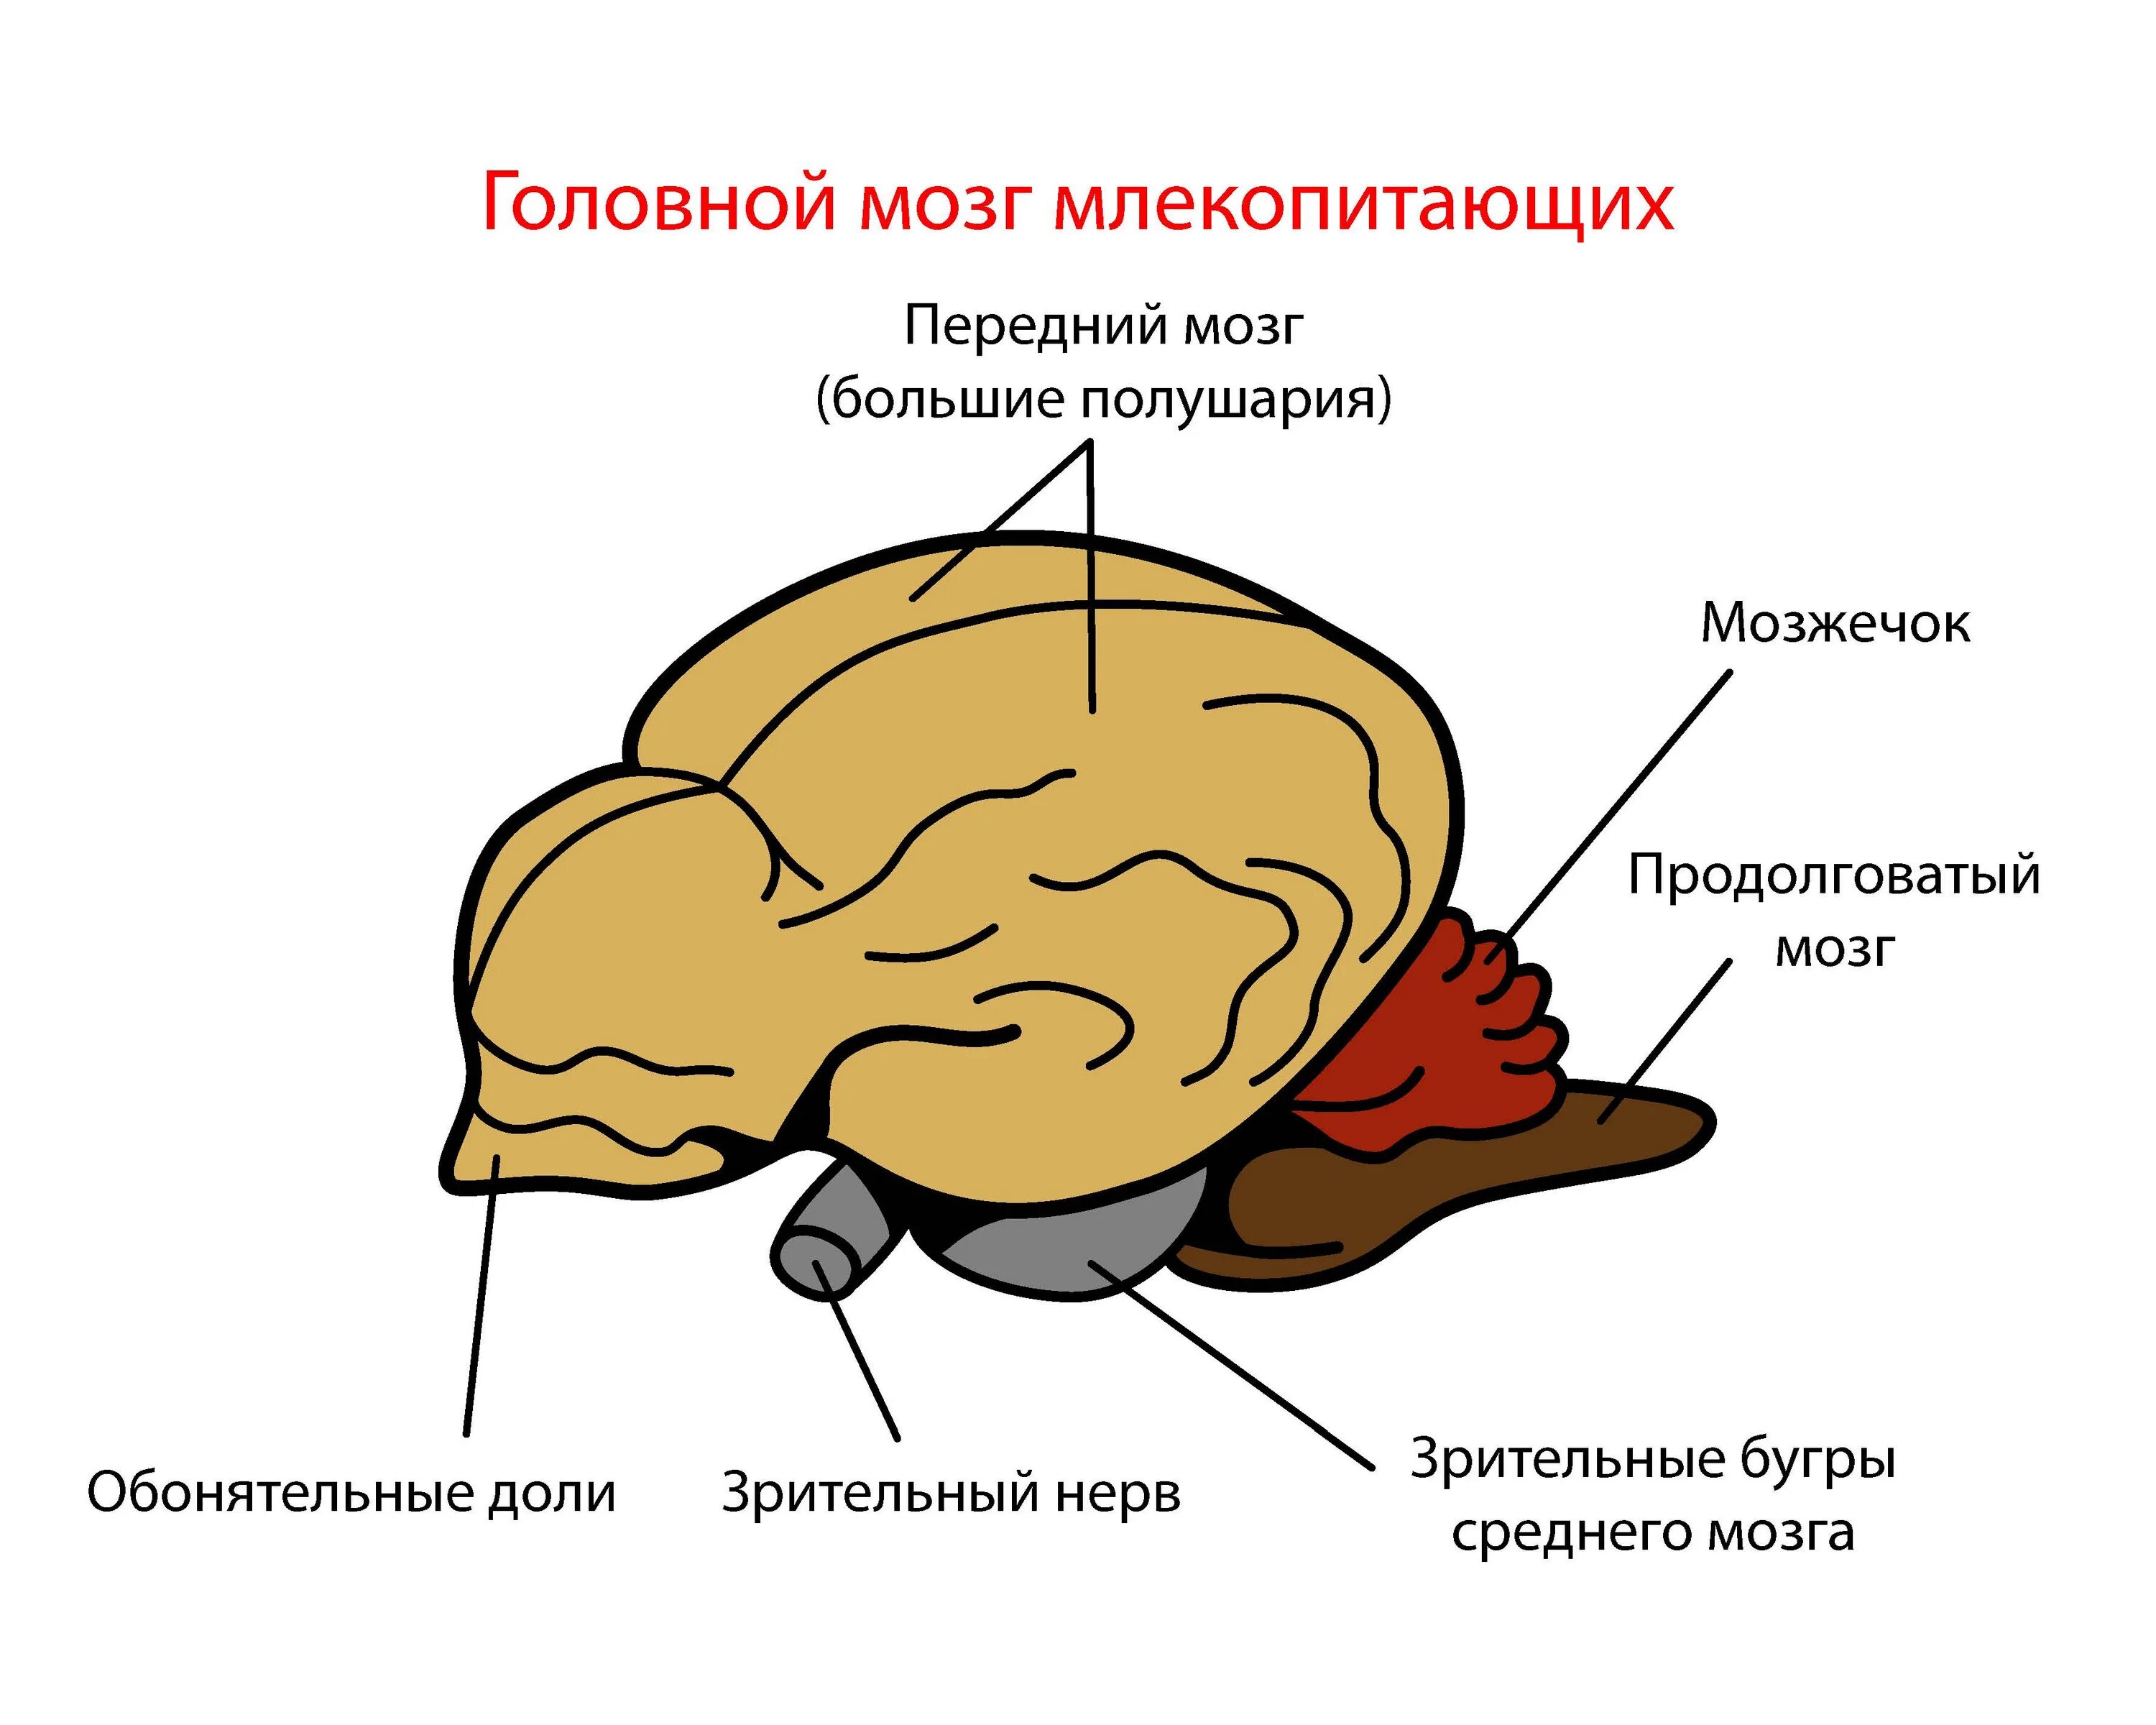 Головной мозг млекопитающих характеризуется. Головной мозг млекопитающих. Отделы головного мозга млекопитающих. Строение головного мозга млекопитающих. Мозг млекопитающего рисунок.